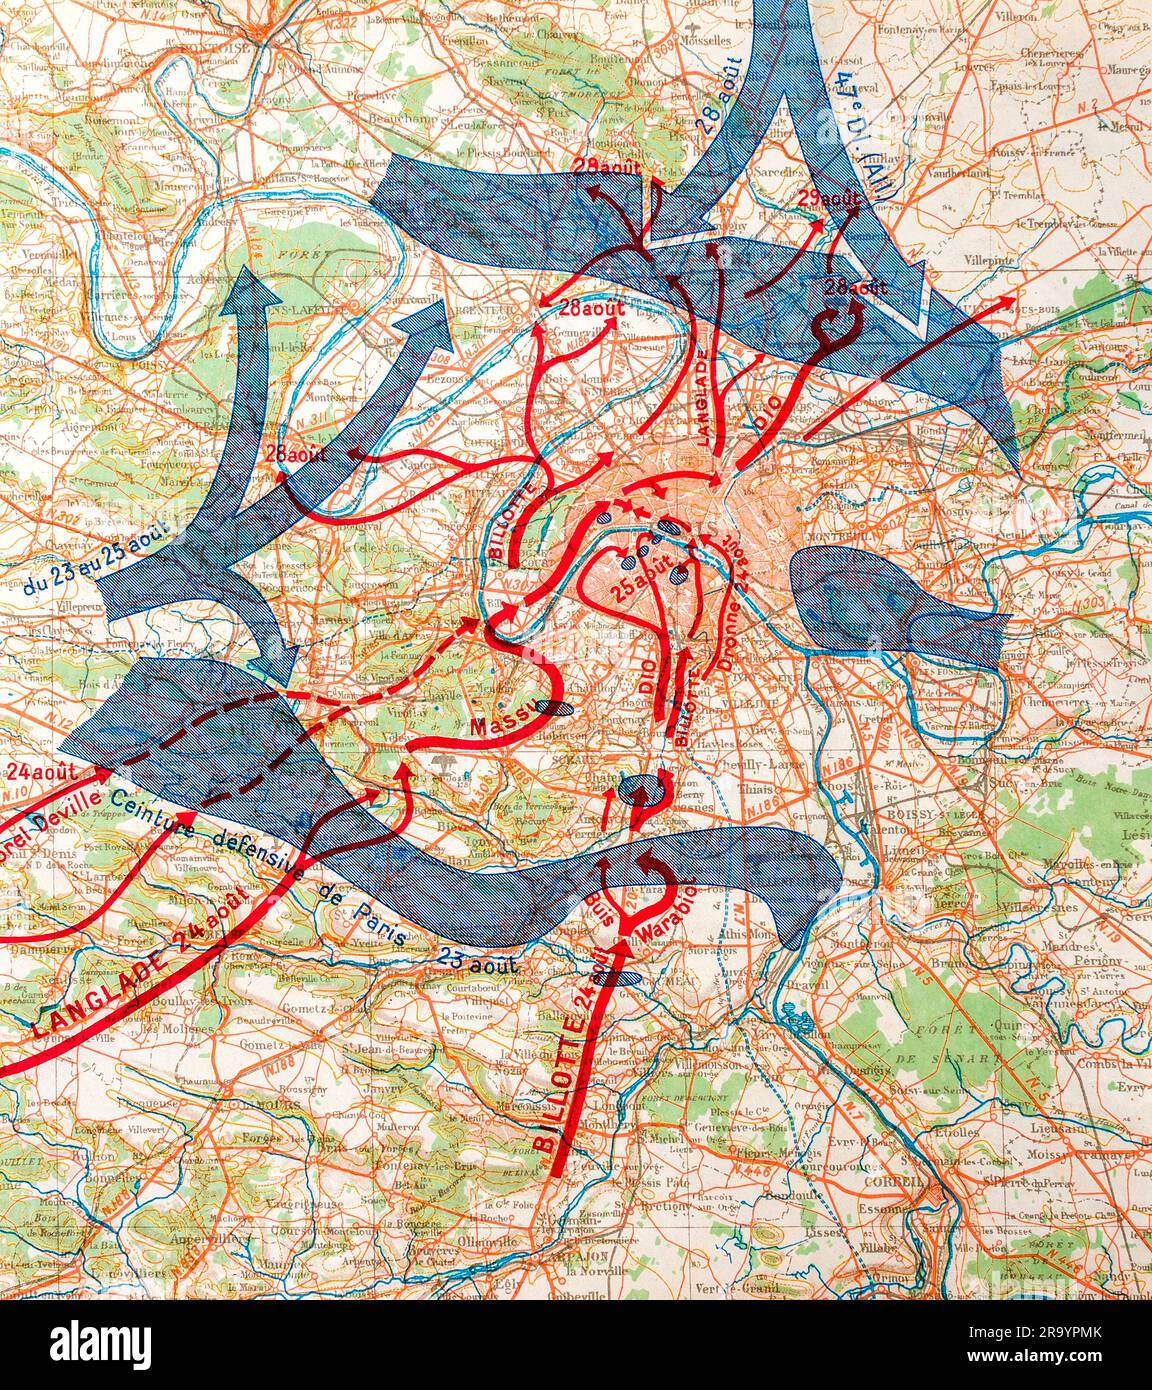 Illustration de la carte du livre de la Guerre mondiale 2 imprimée en 1946 montrant les mouvements de l'armée des alliés et de l'axe sur le territoire français en 1944. Banque D'Images